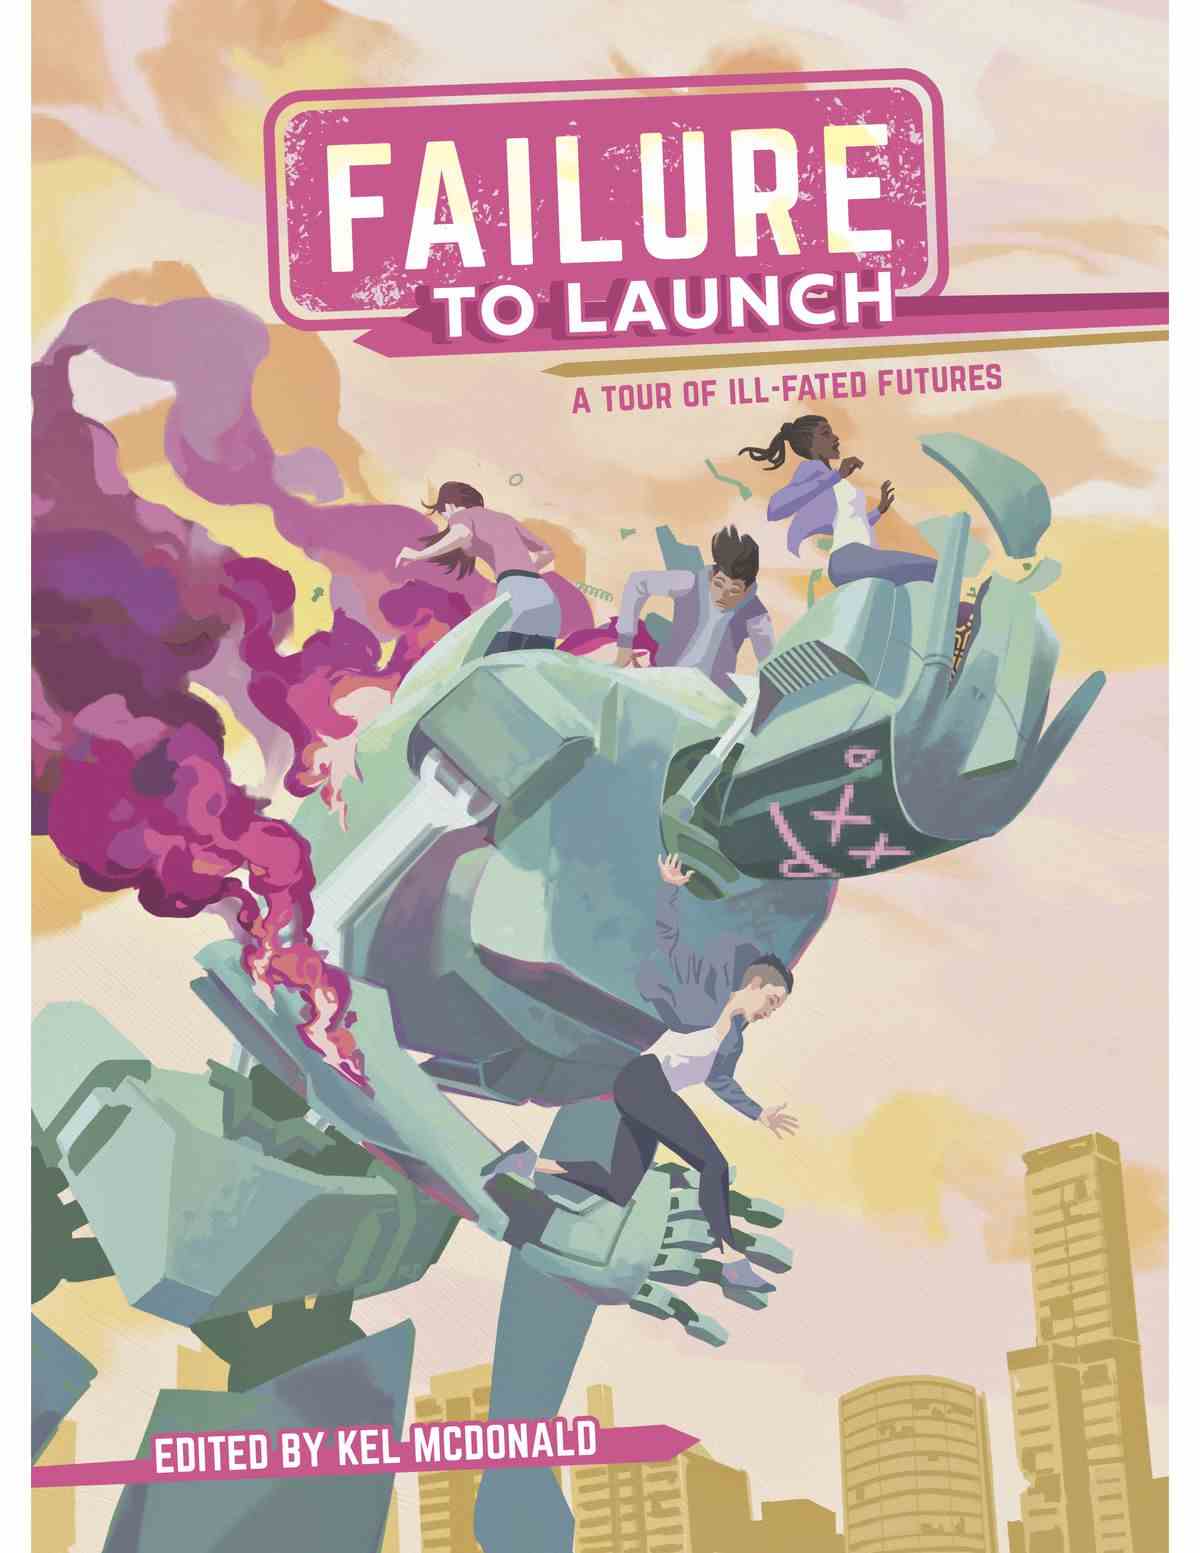 Un quatuor de personnes saute d'un grand robot renversé, alors qu'il s'enflamme, sur la couverture de Failure to Launch.